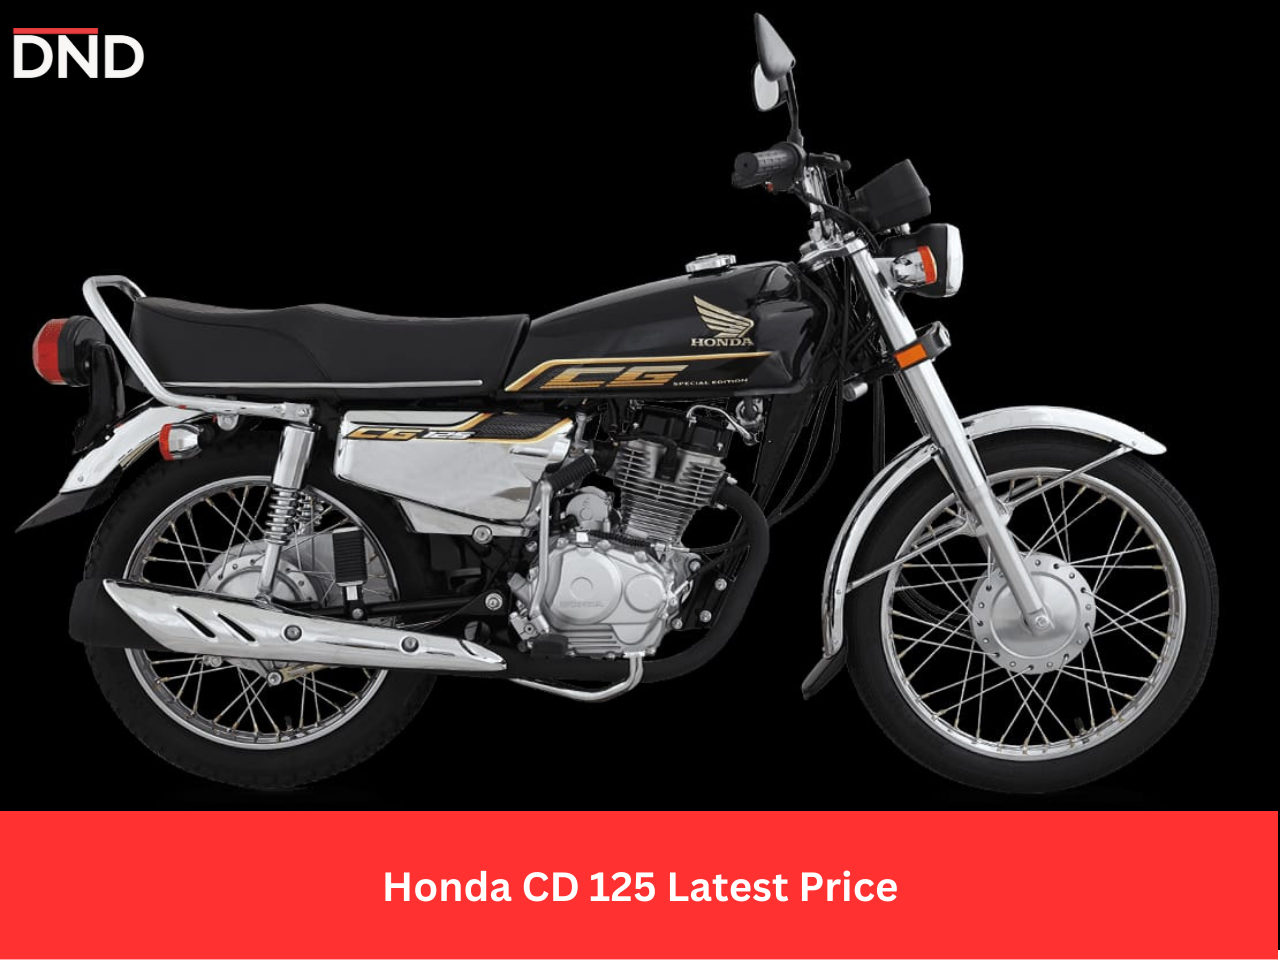 Honda CG 125 instalment plan